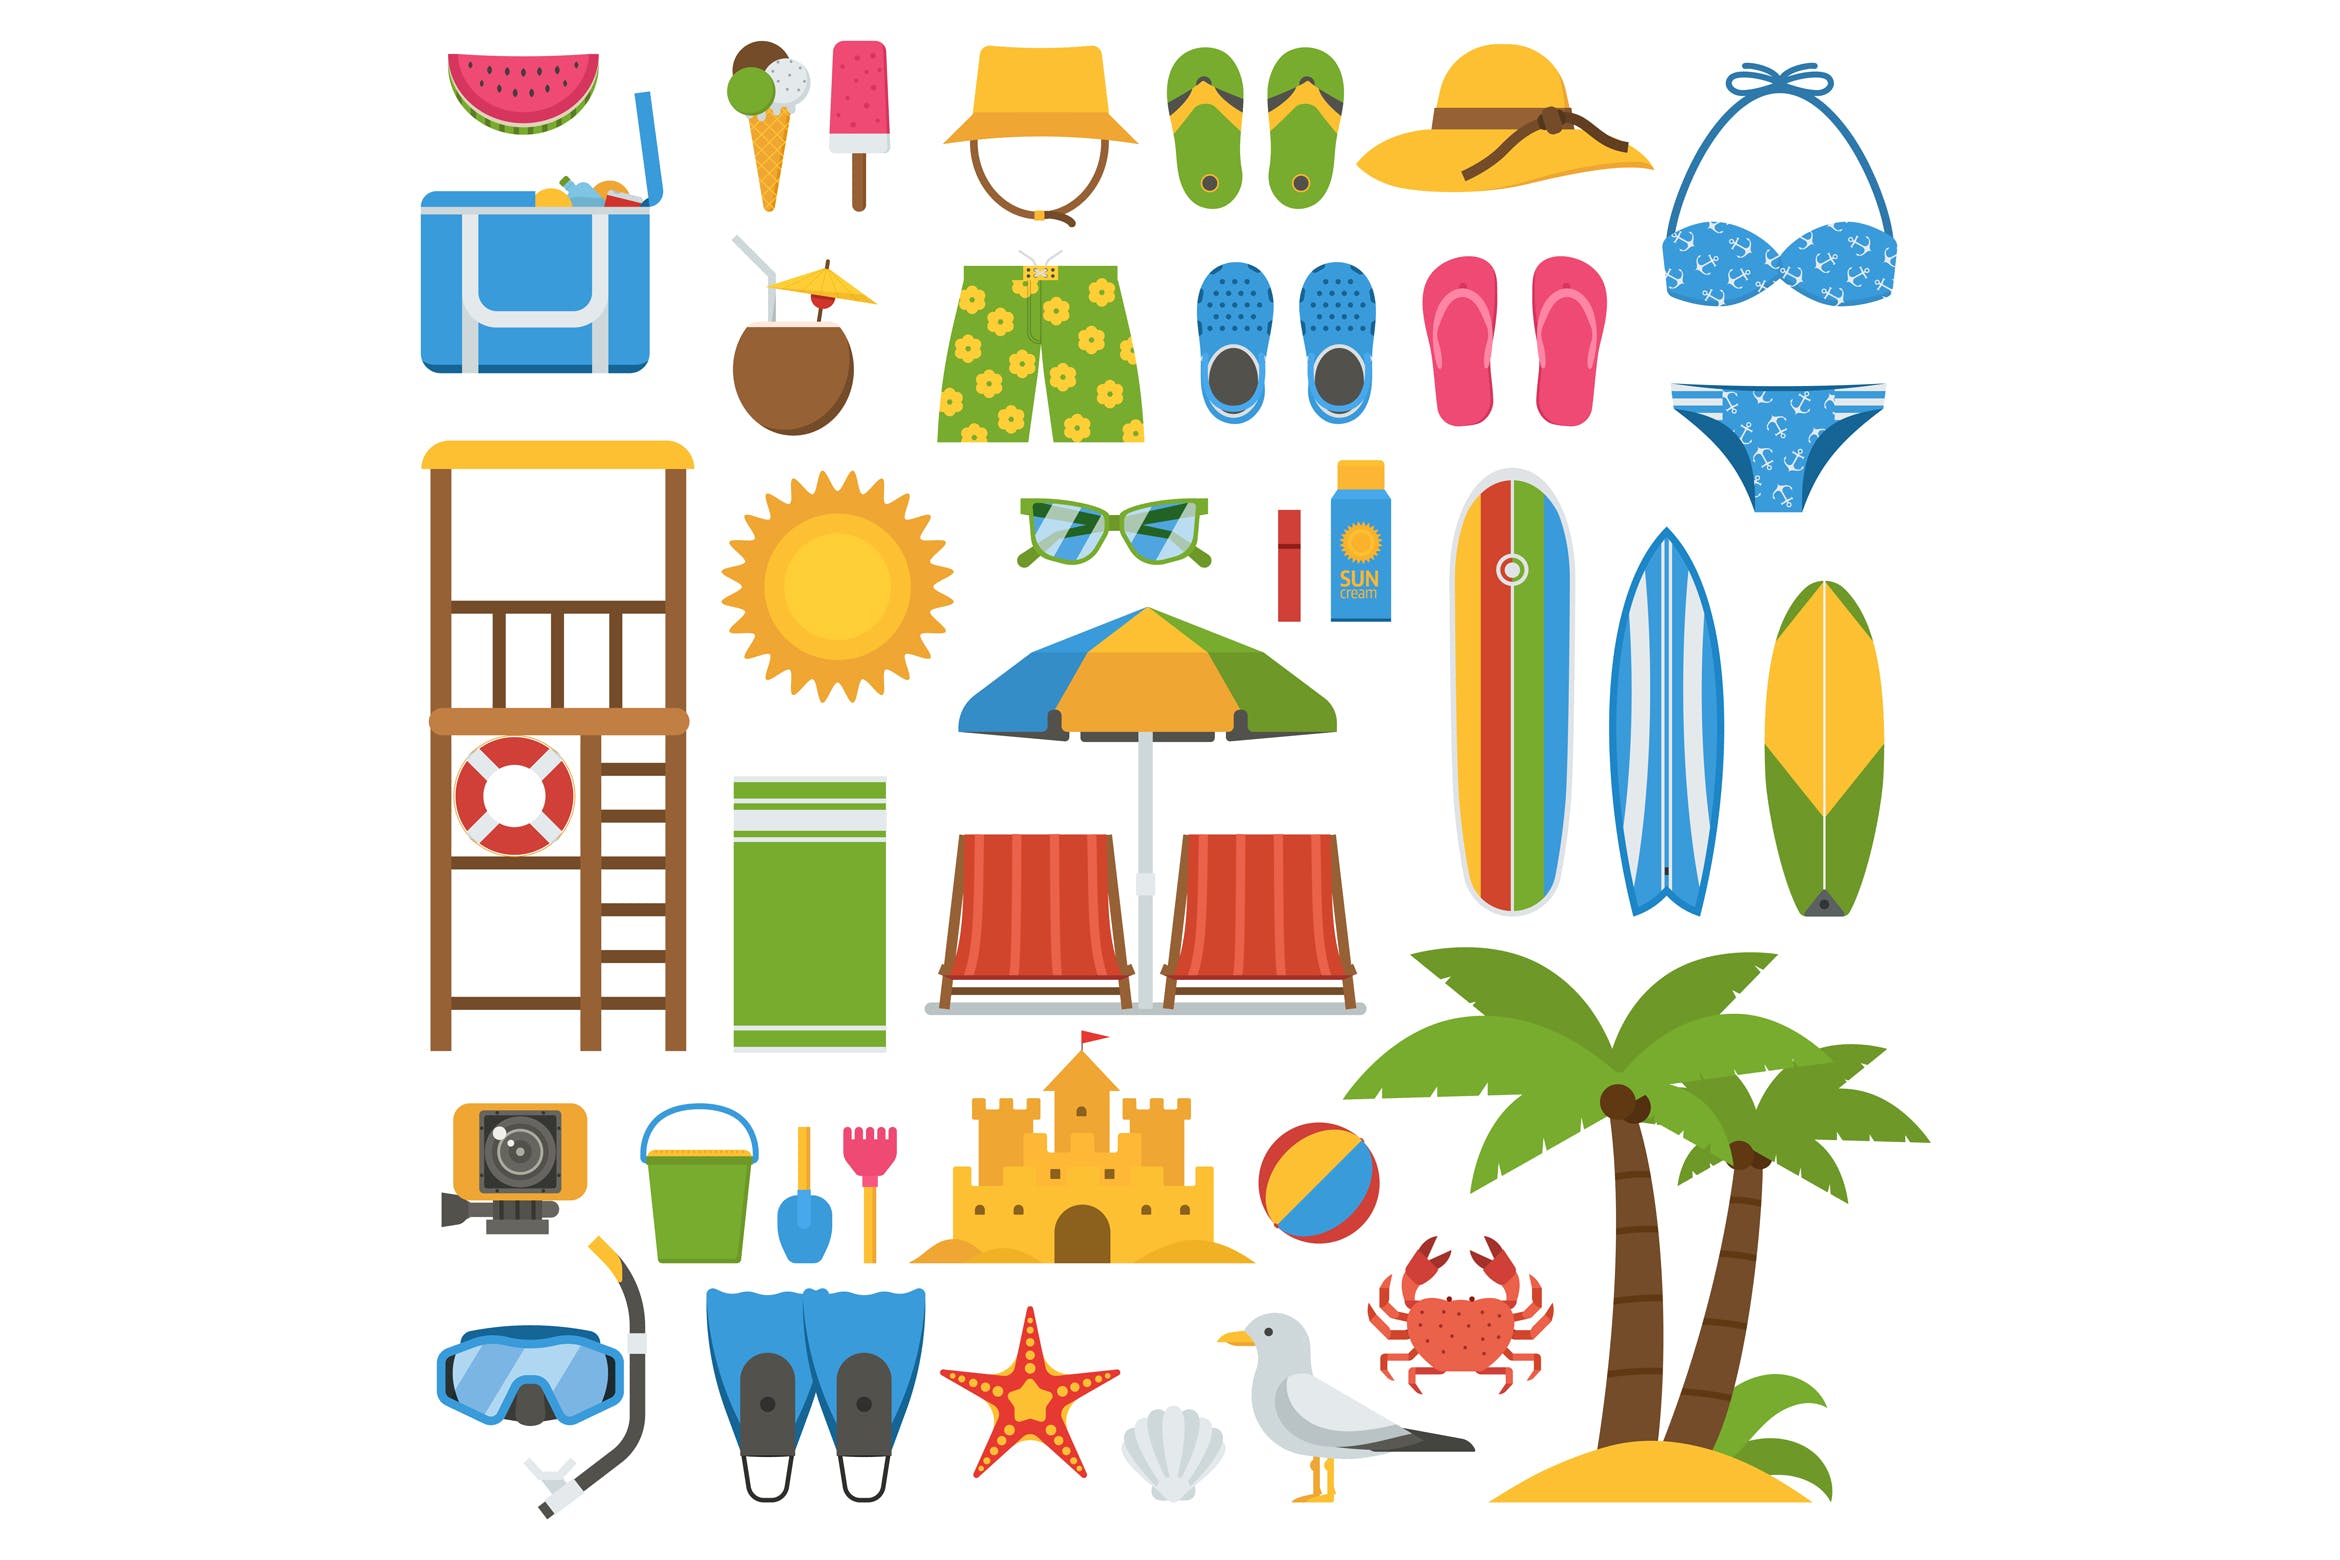 夏日海滩主题第一素材精选图标和元素设计素材集 Summer Beach Icons and Elements Set插图